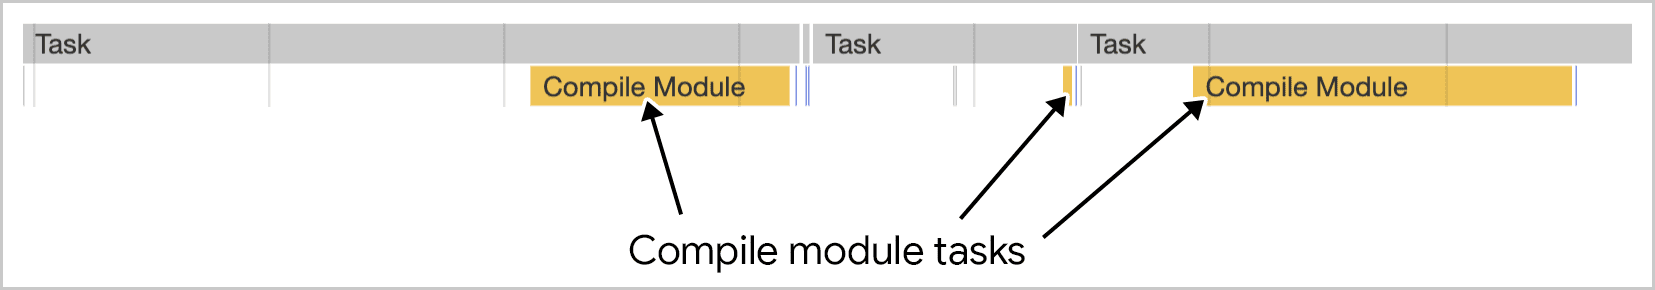 Travail de compilation de modules dans plusieurs tâches, comme illustré dans les outils pour les développeurs Chrome.